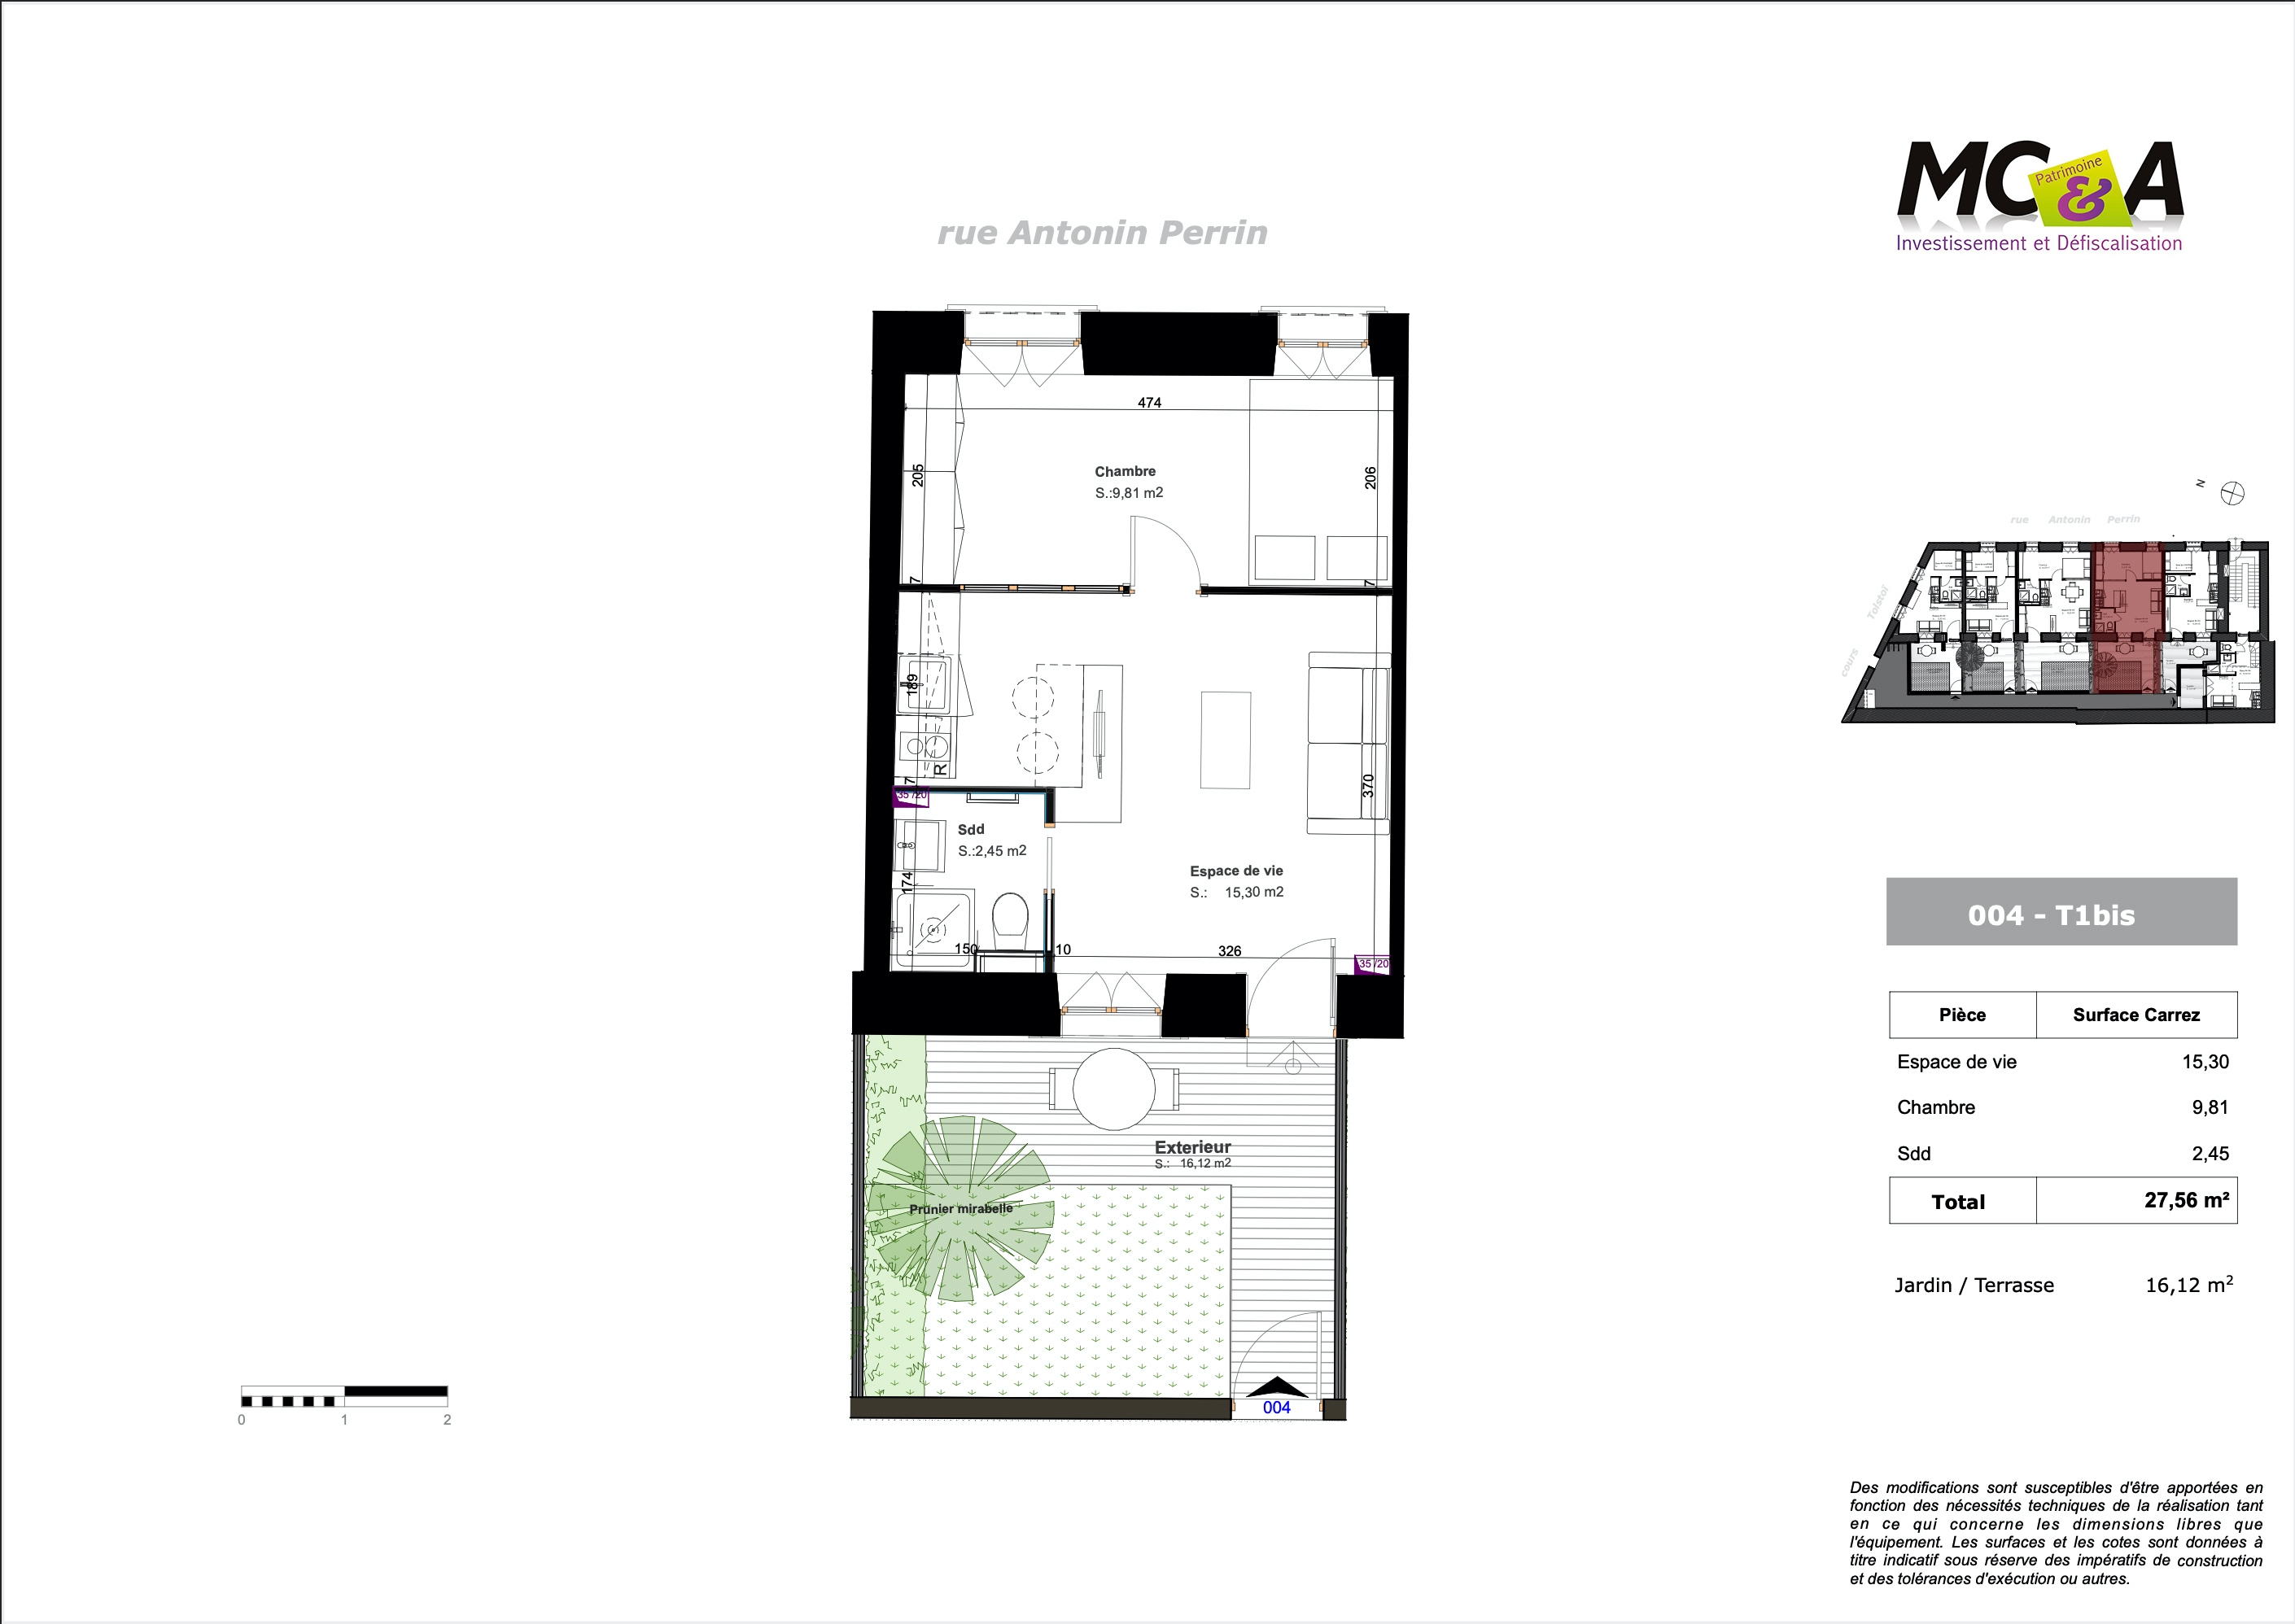  programme immobilier neuf  Location meublée non-professionnelle (LMNP)  quartier Ferrandière / Maisons Neuves 